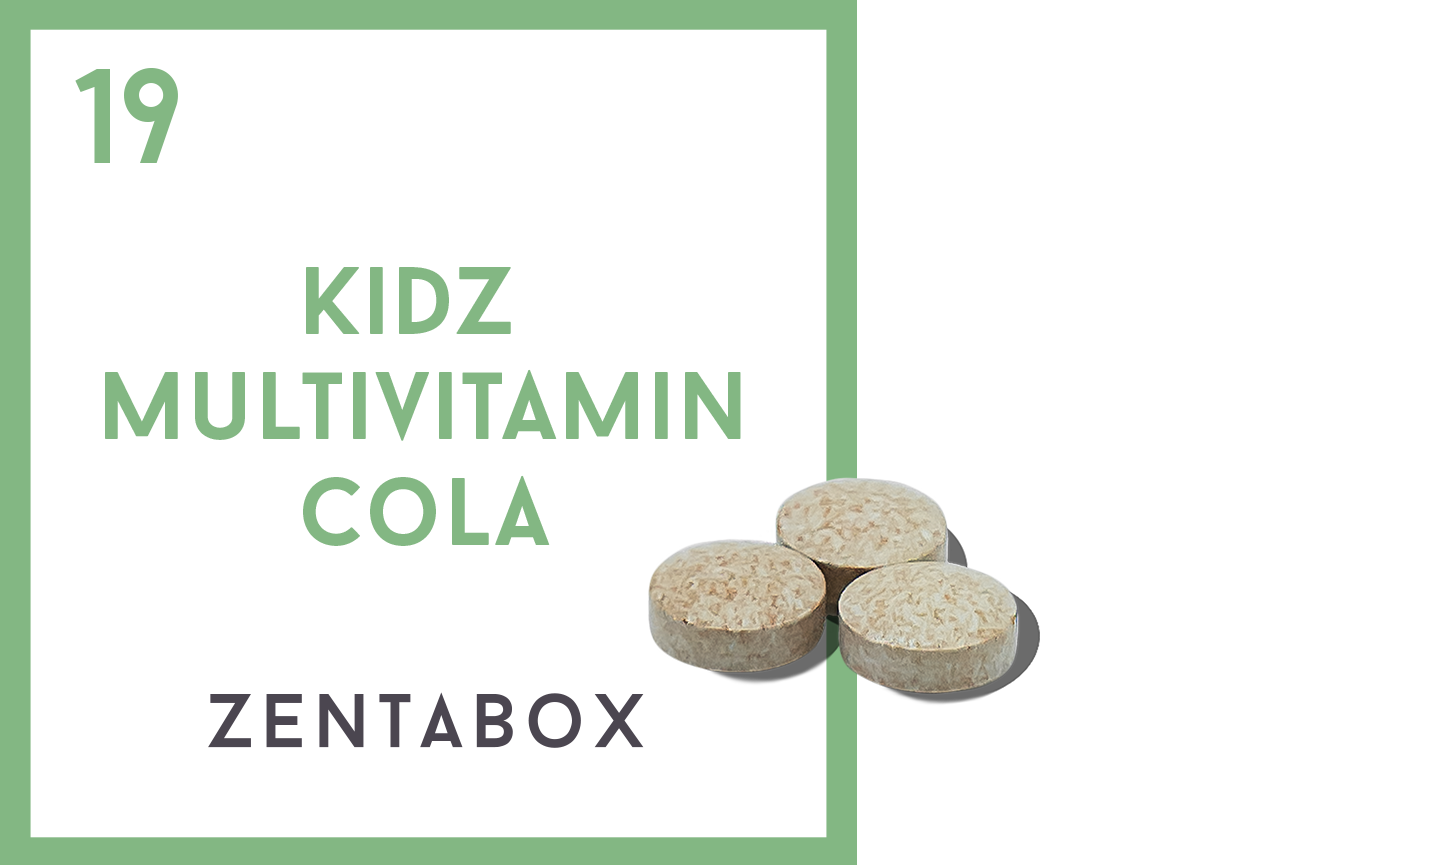 Kidz Multivitamin Cola